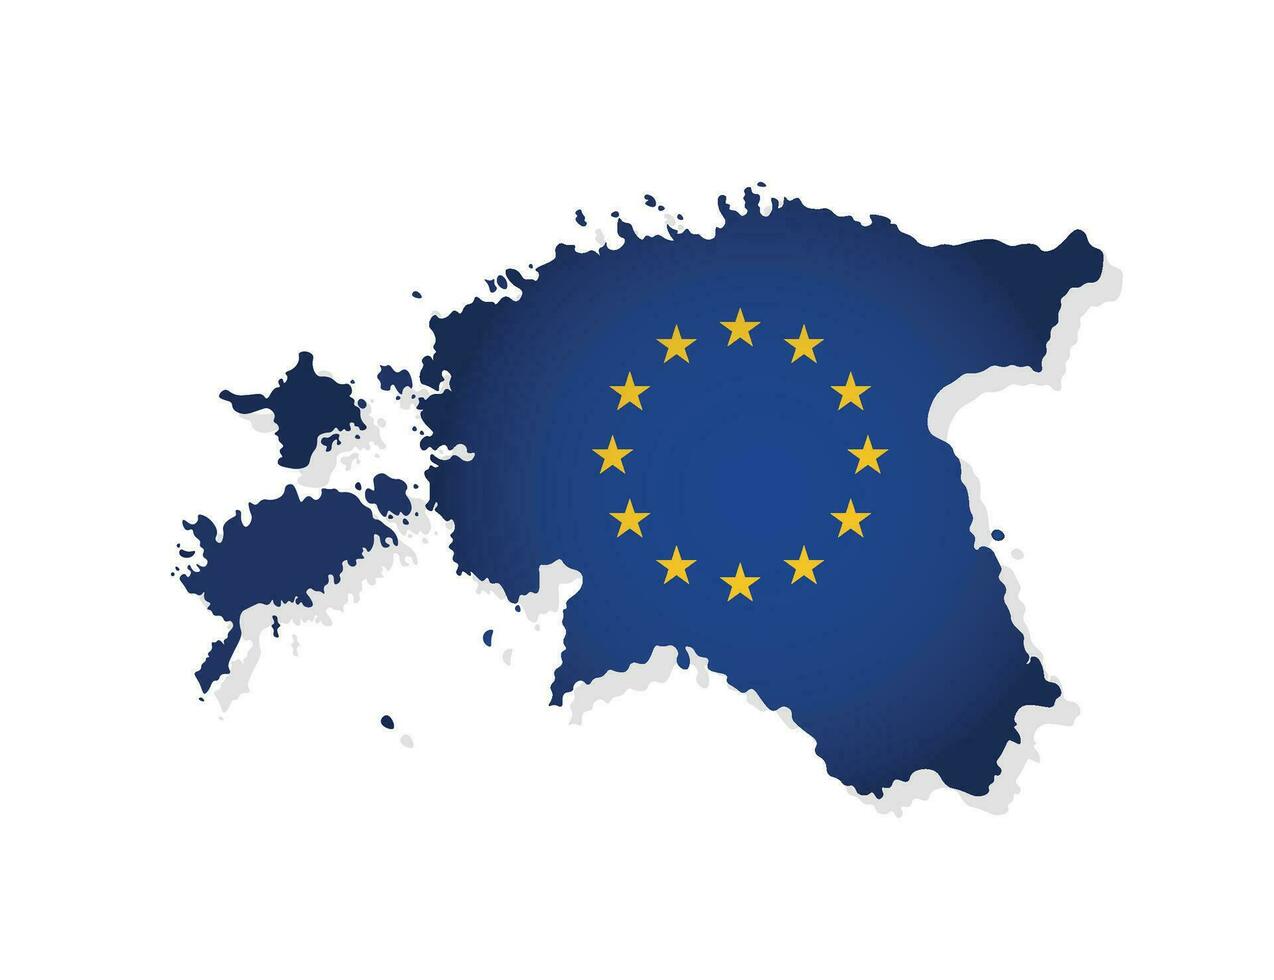 vektor illustration med isolerat Karta av medlem av europeisk union - estland. modern begrepp med eu flagga och gul stjärnor på blå bakgrund